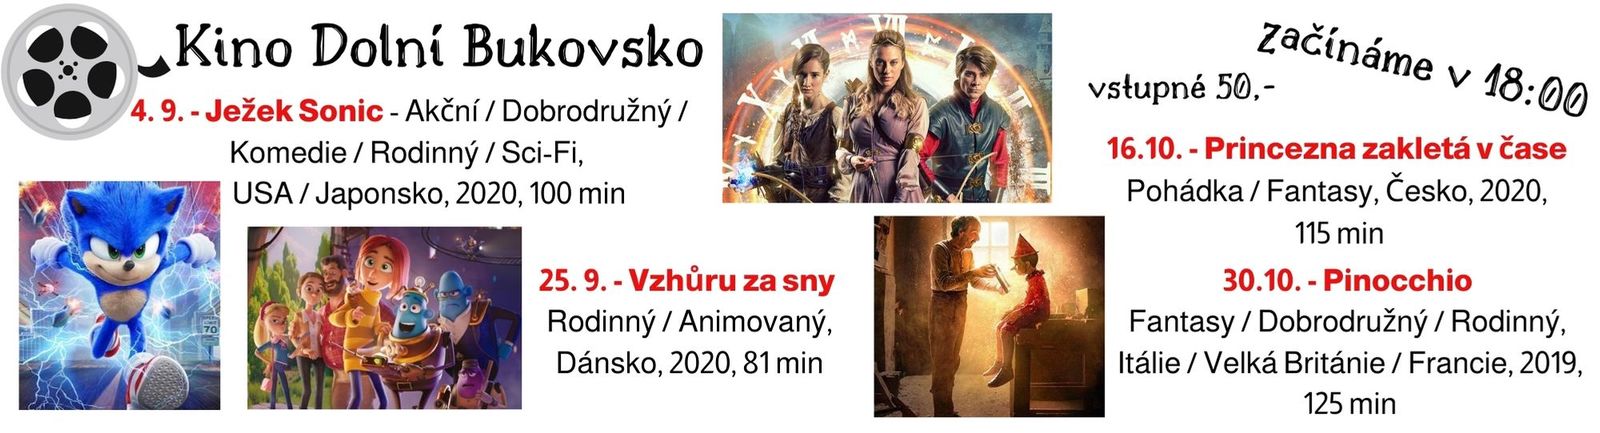 Kino Dolní Bukovsko.jpg